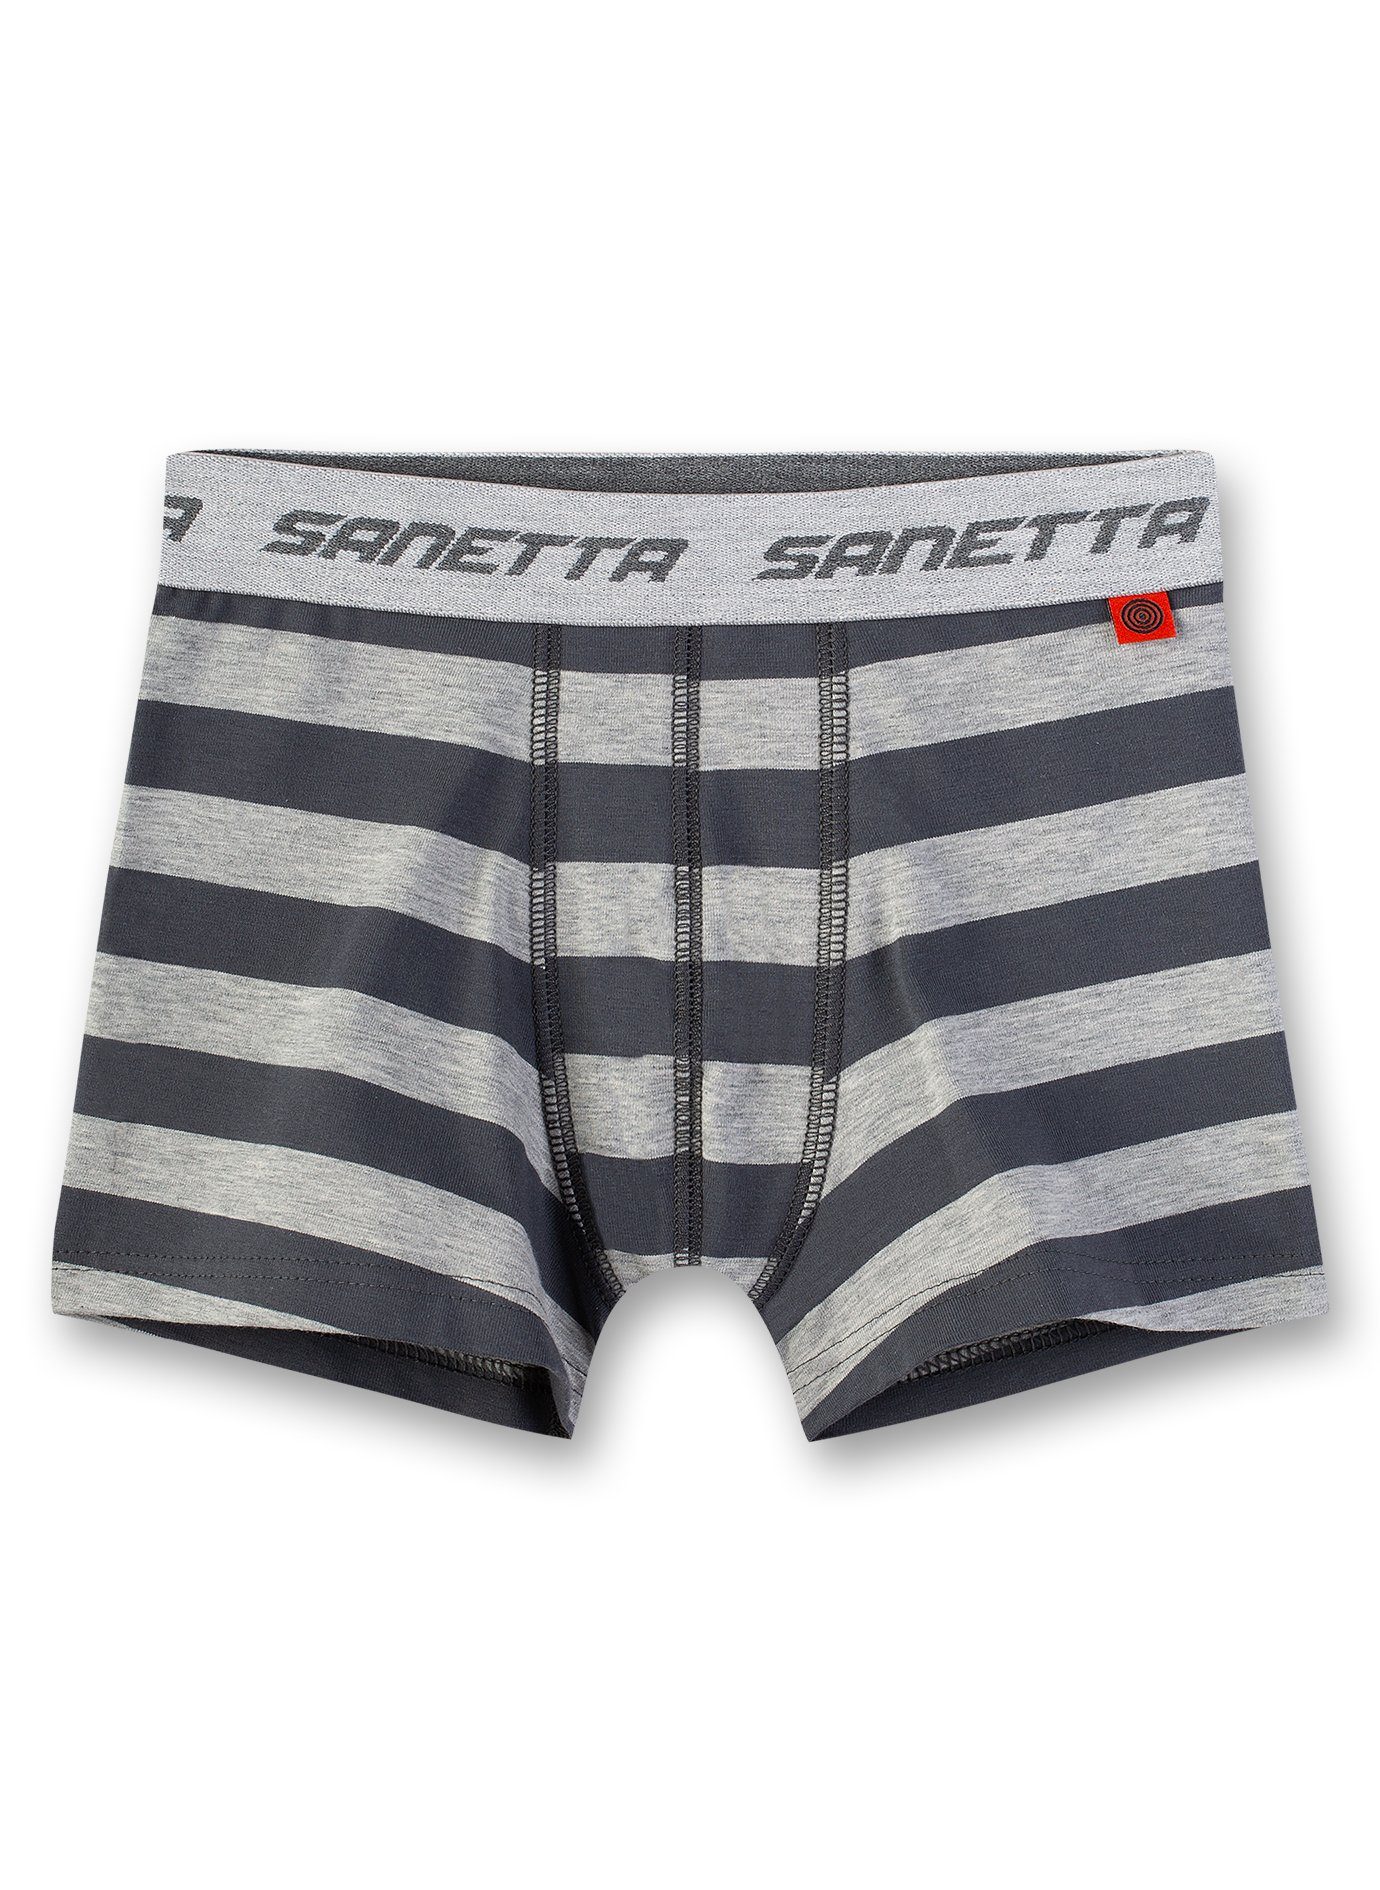 Sanetta Boxer Jungen Shorts - Pants, Unterhose, grau gestreift